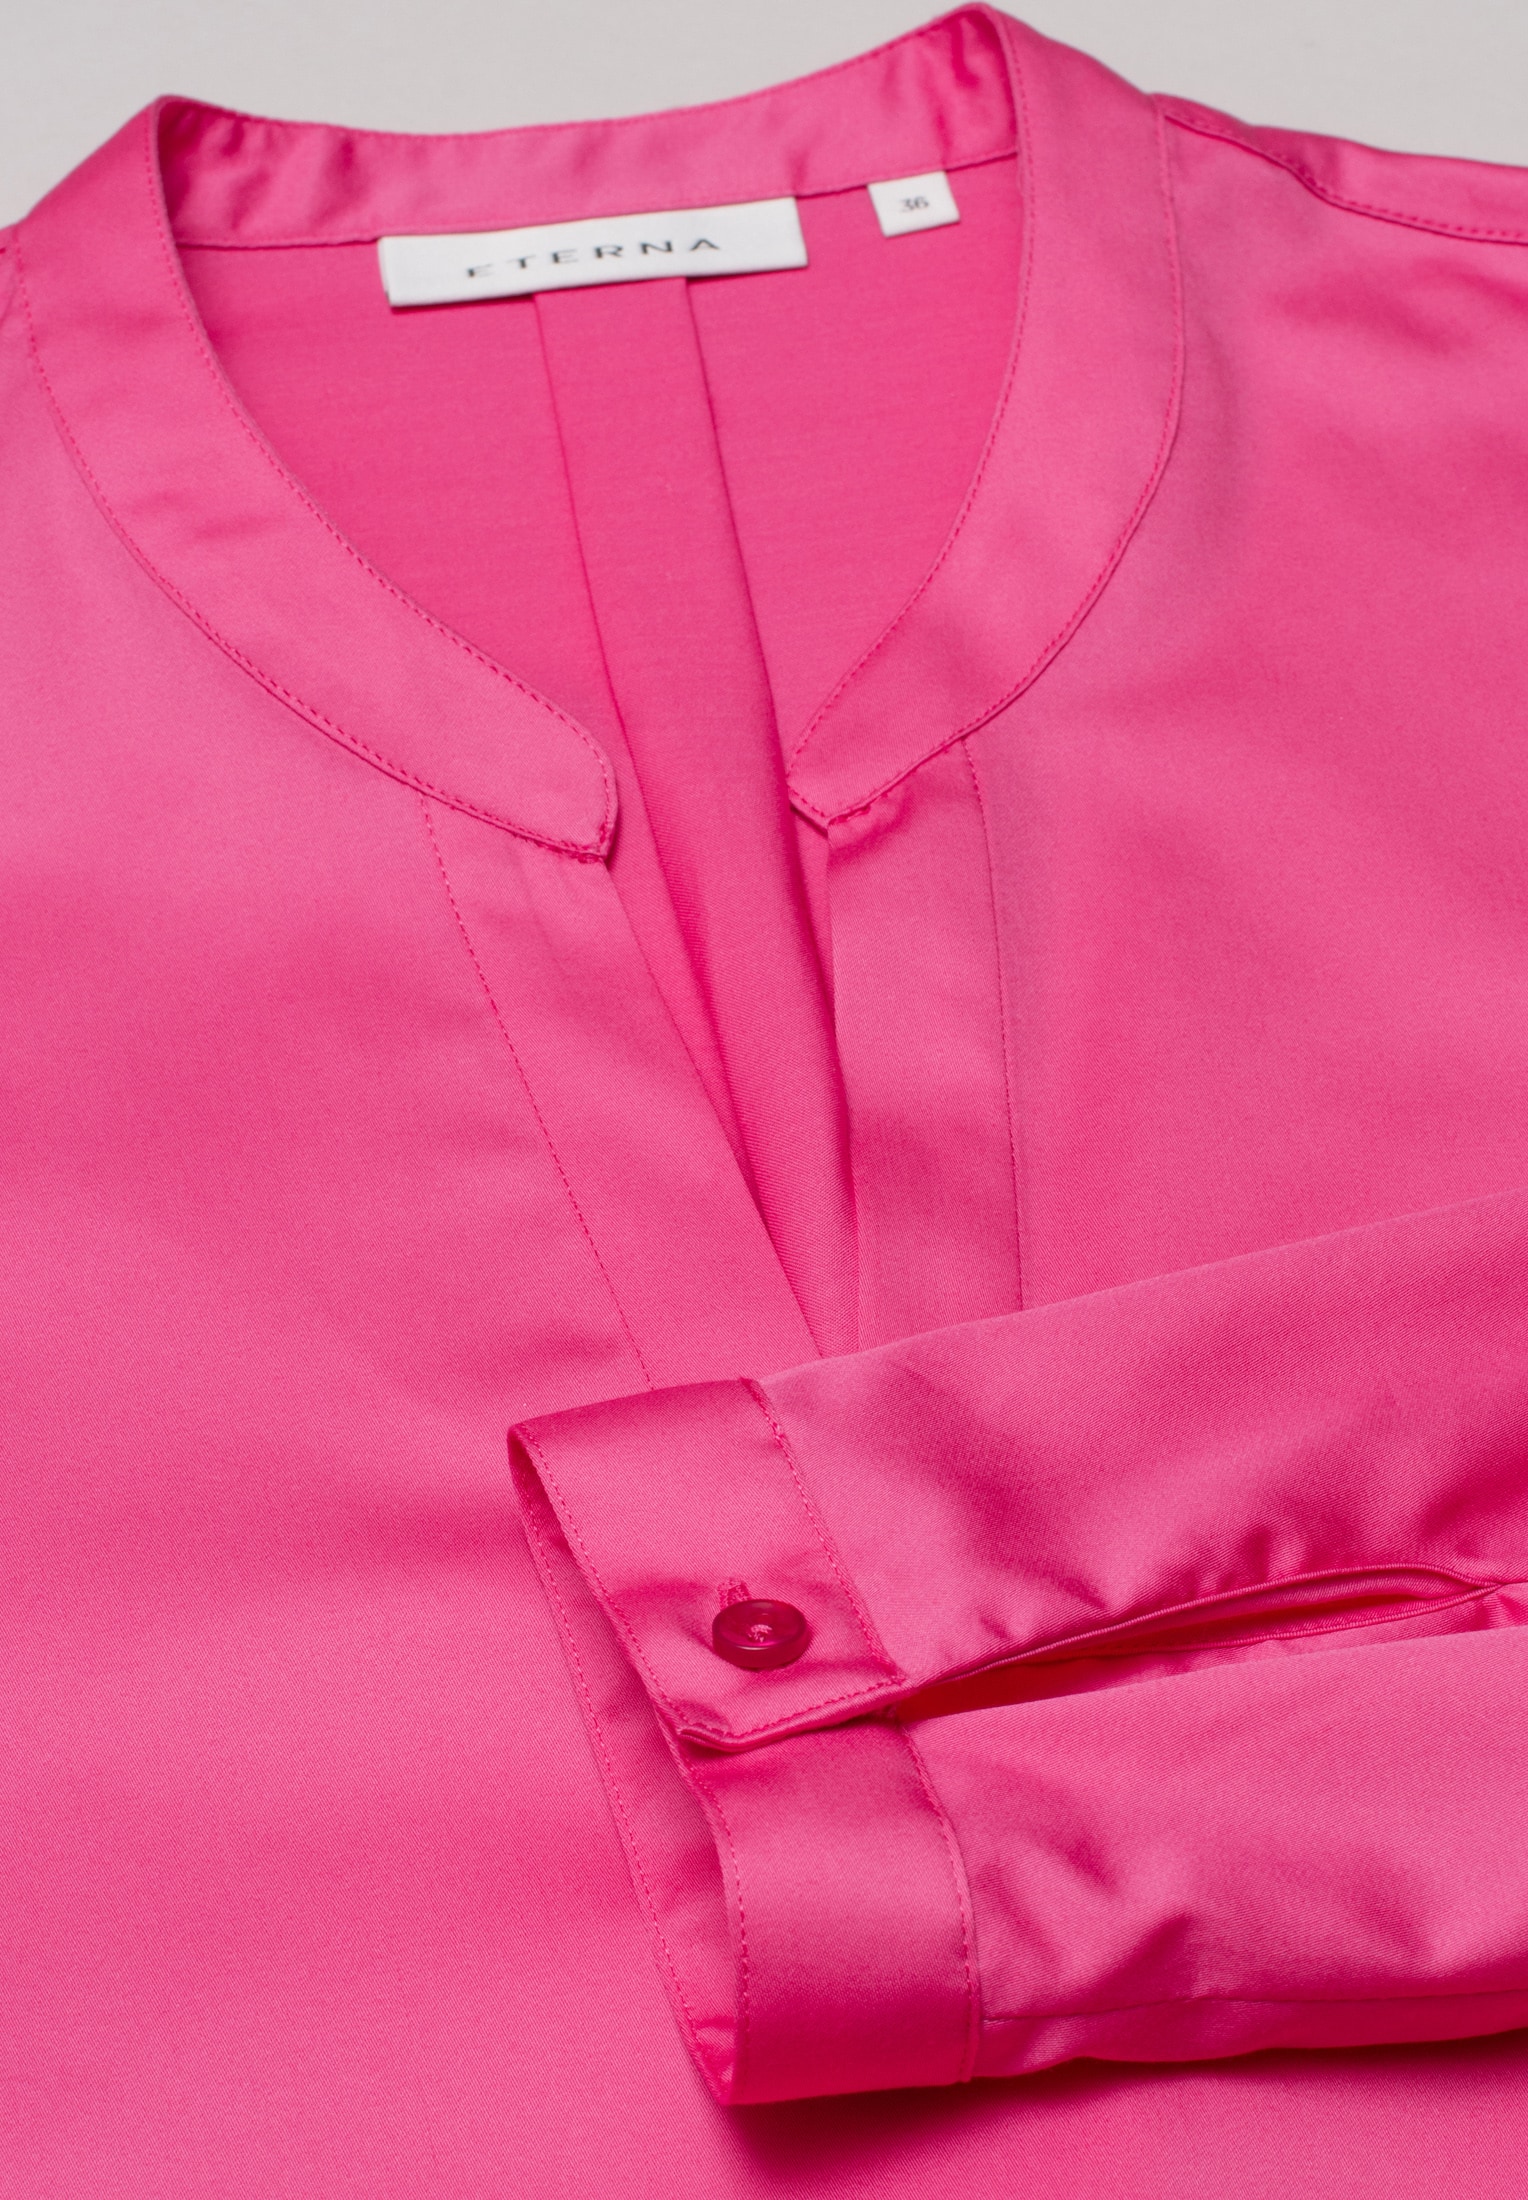 Satin Shirt in pink unifarben Langarm 50 | | 2BL00618-15-21-50-1/1 Bluse | pink 